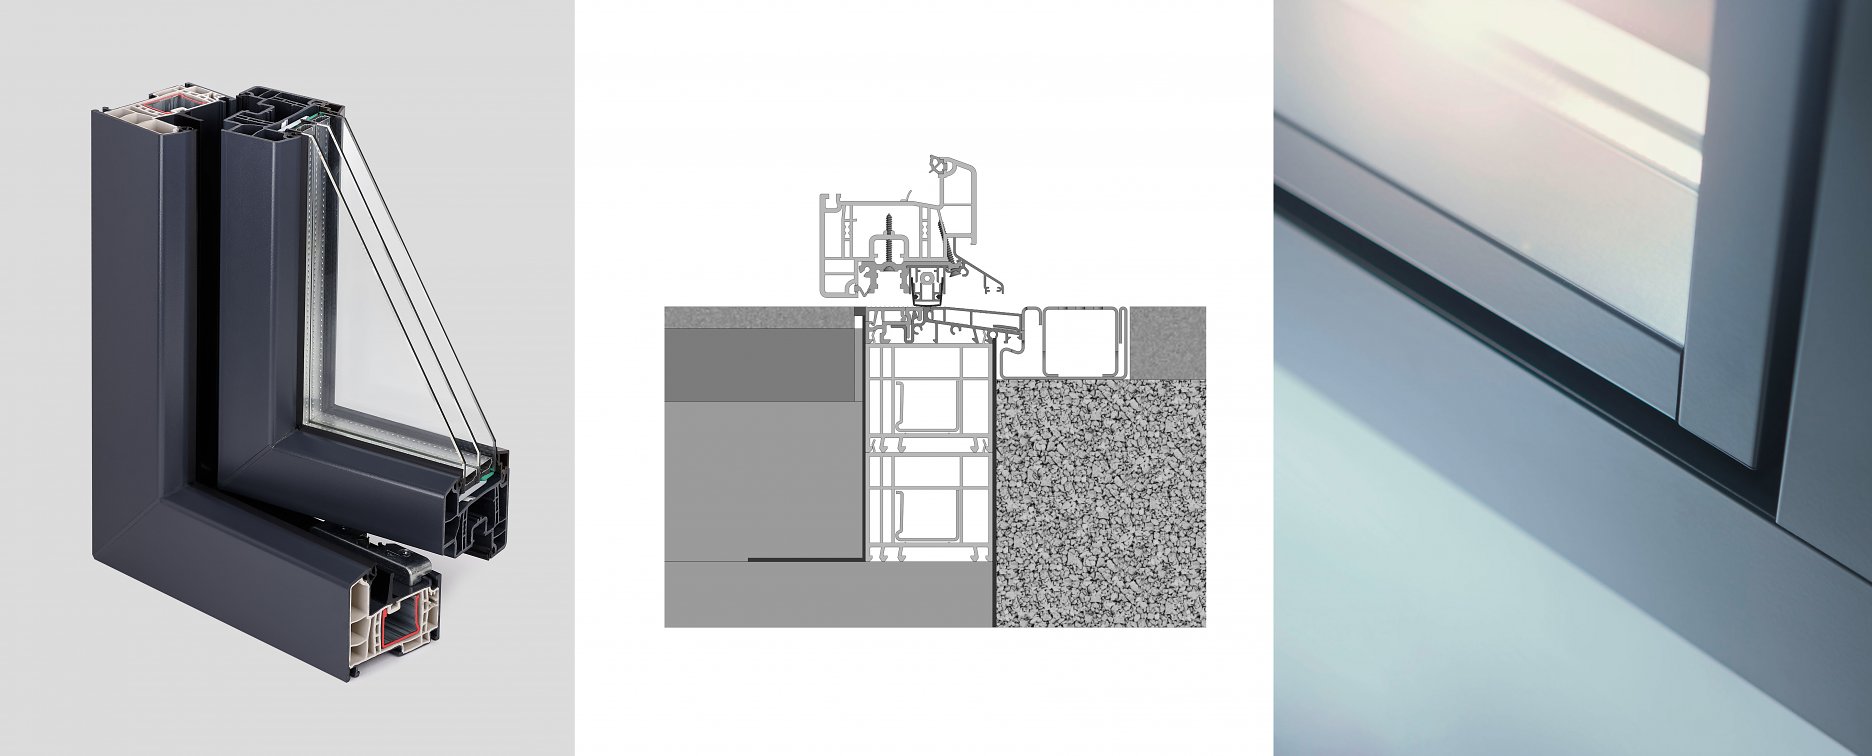 Zľava: Okenný profil GENEO z materiálu RAU-FIPRO X, Rezanie s nulovým prahom pre veľkoformátové dvere GENEO, Hliníkové obloženie je predovšetkým dizajnovou záležitosťou vhodnou pre modernú  architektúru      
